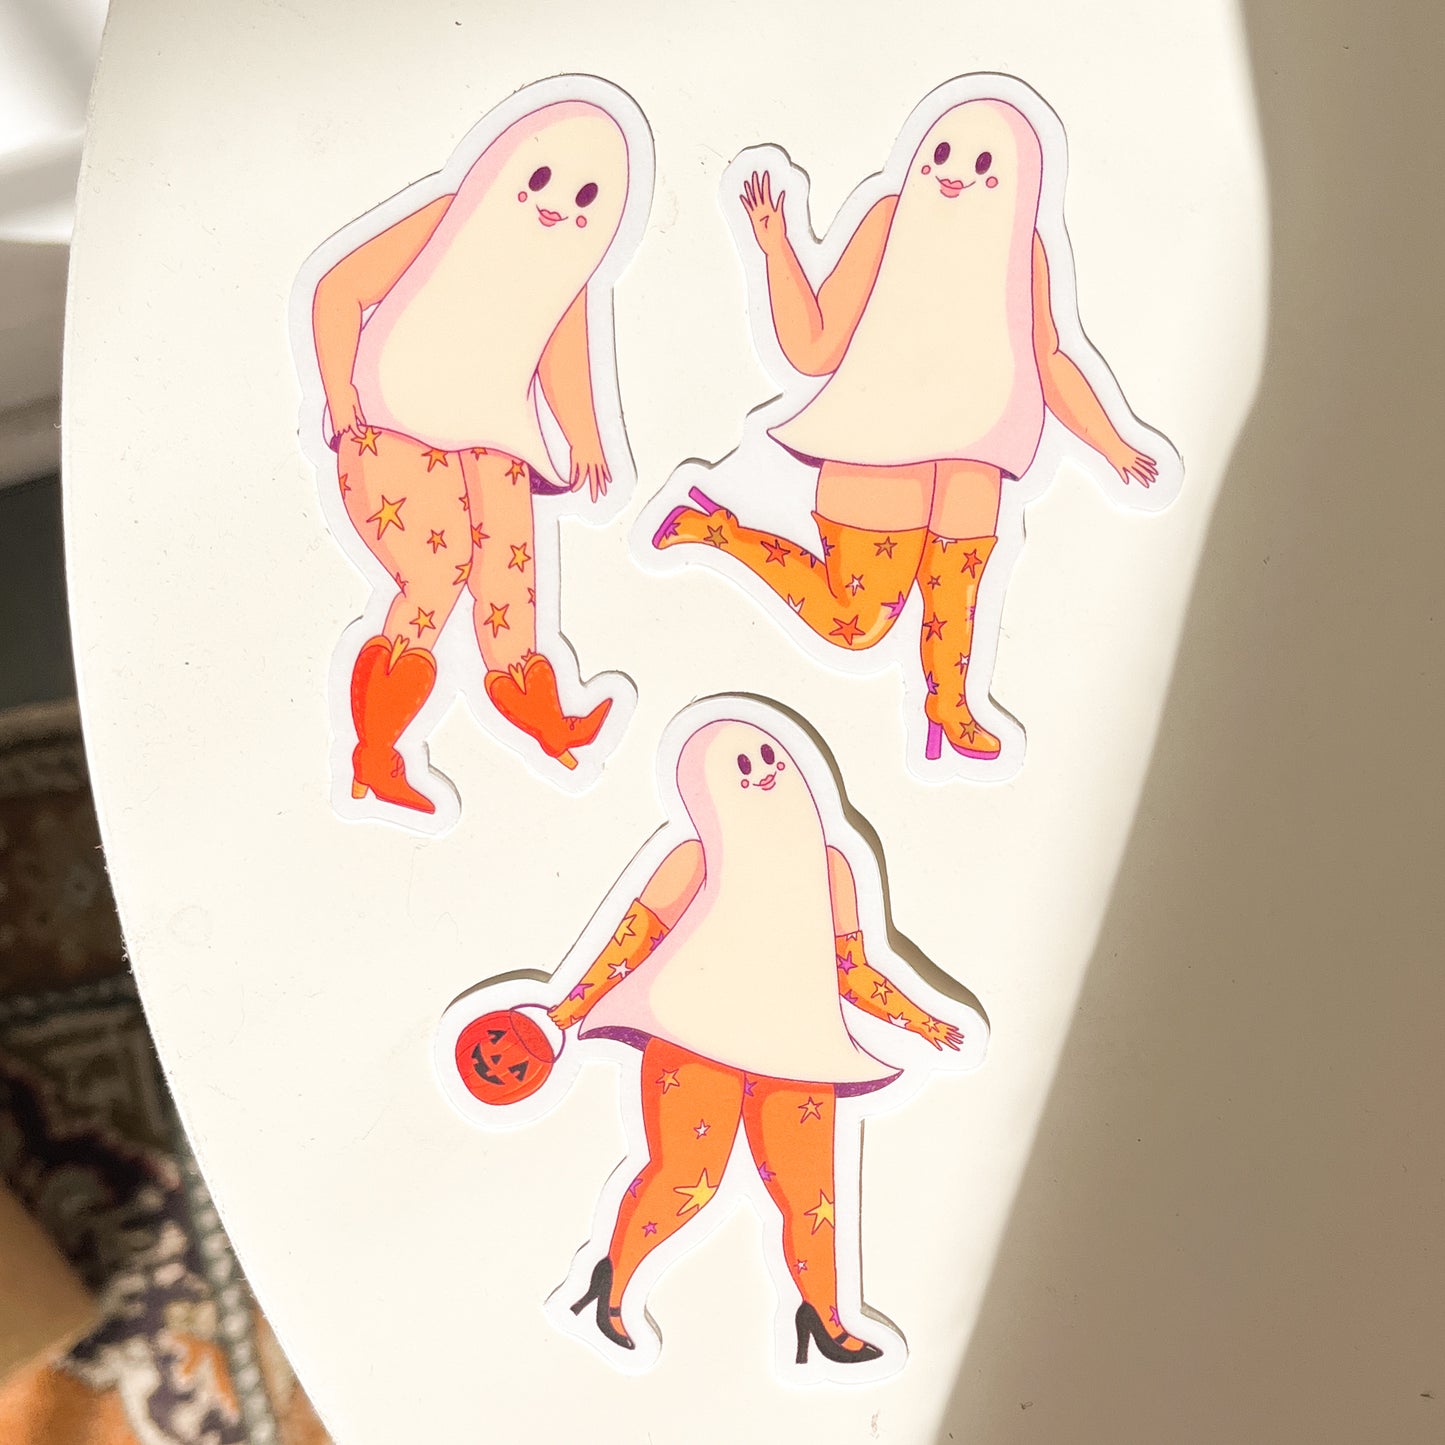 Ghostie Girls sticker 3-pack